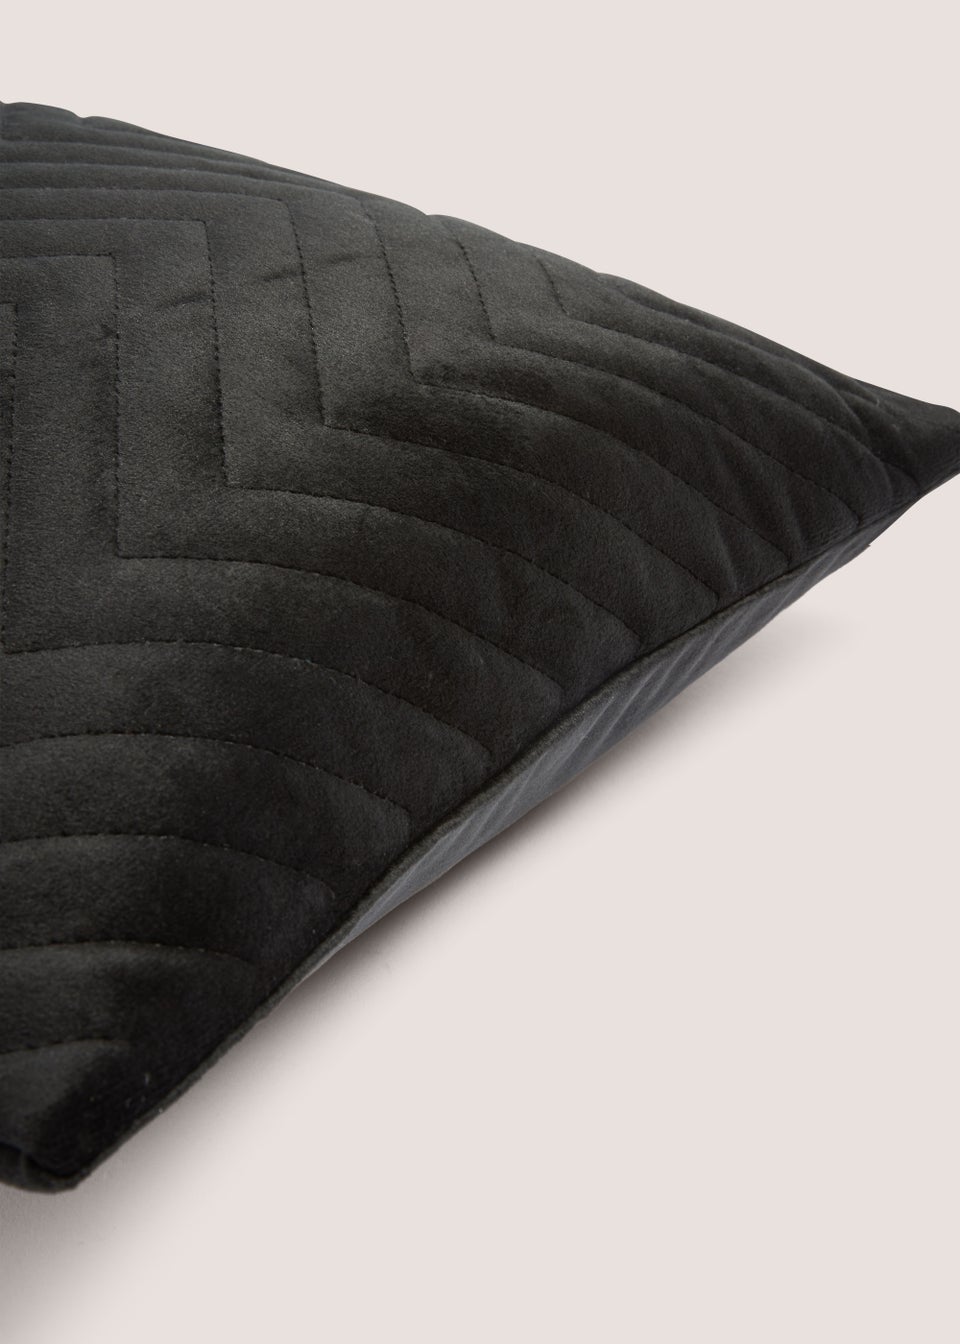 Black Velvet Quilted Cushion (30cm x 50cm)